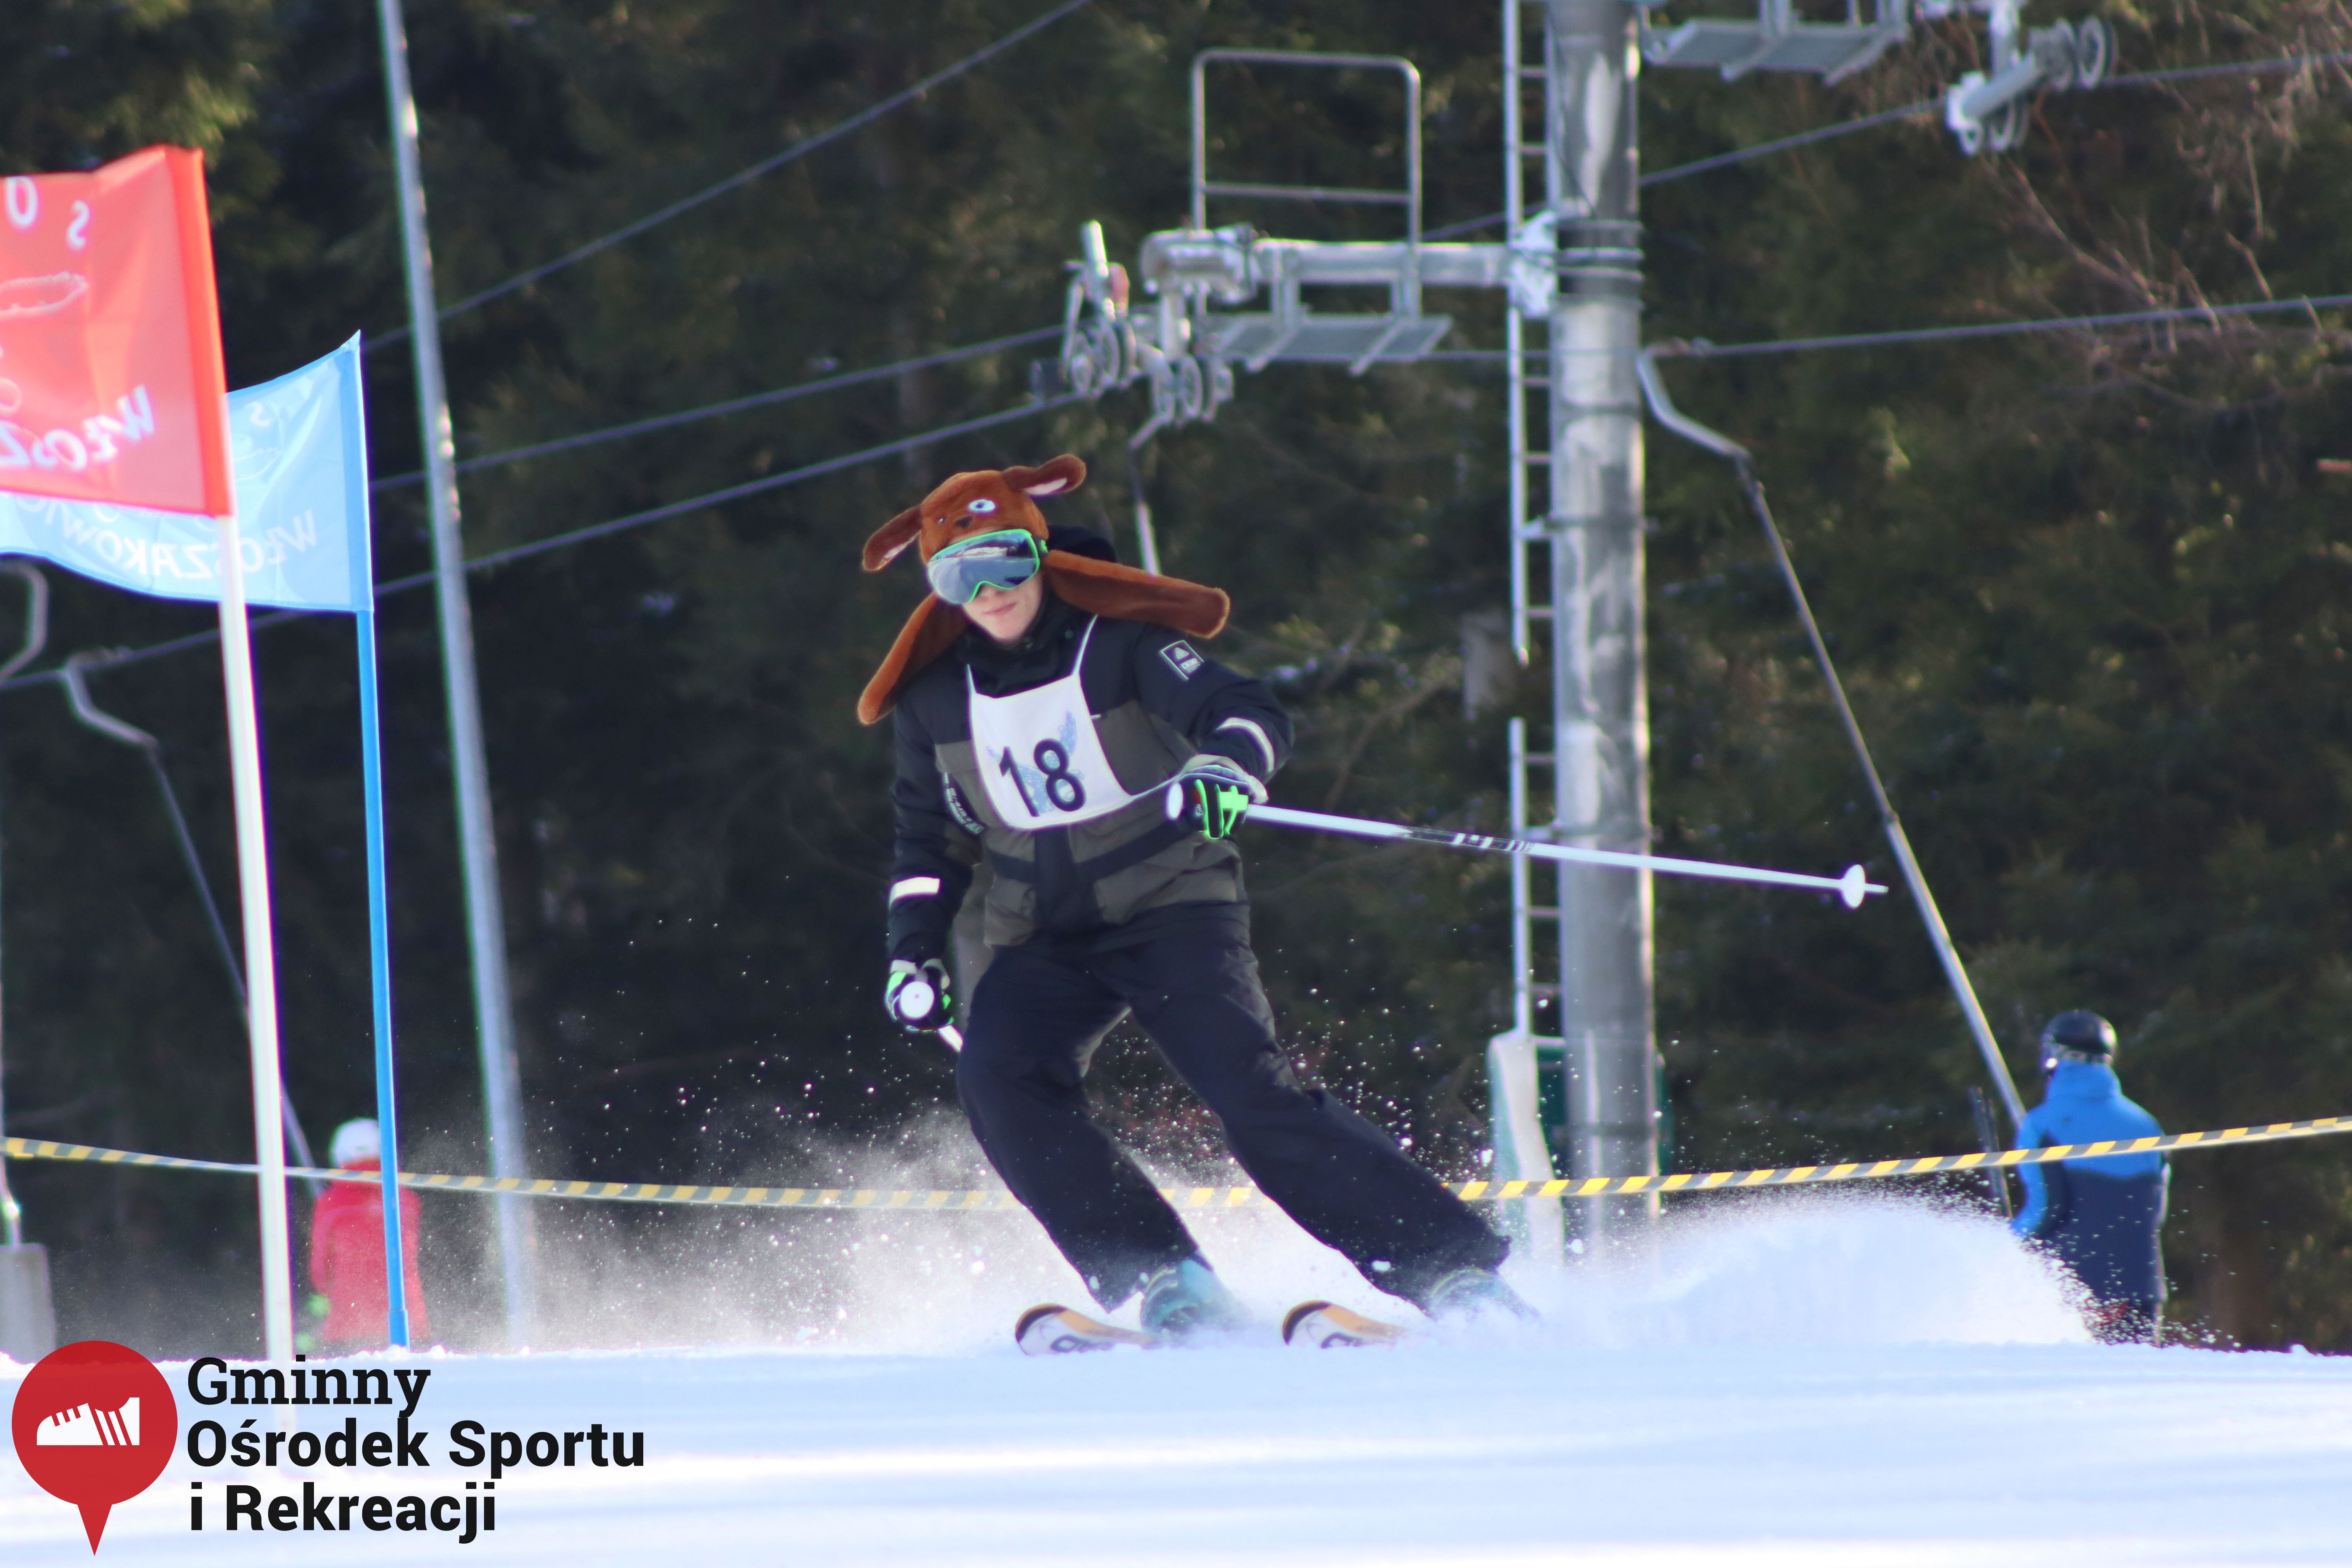 2022.02.12 - 18. Mistrzostwa Gminy Woszakowice w narciarstwie029.jpg - 1,56 MB